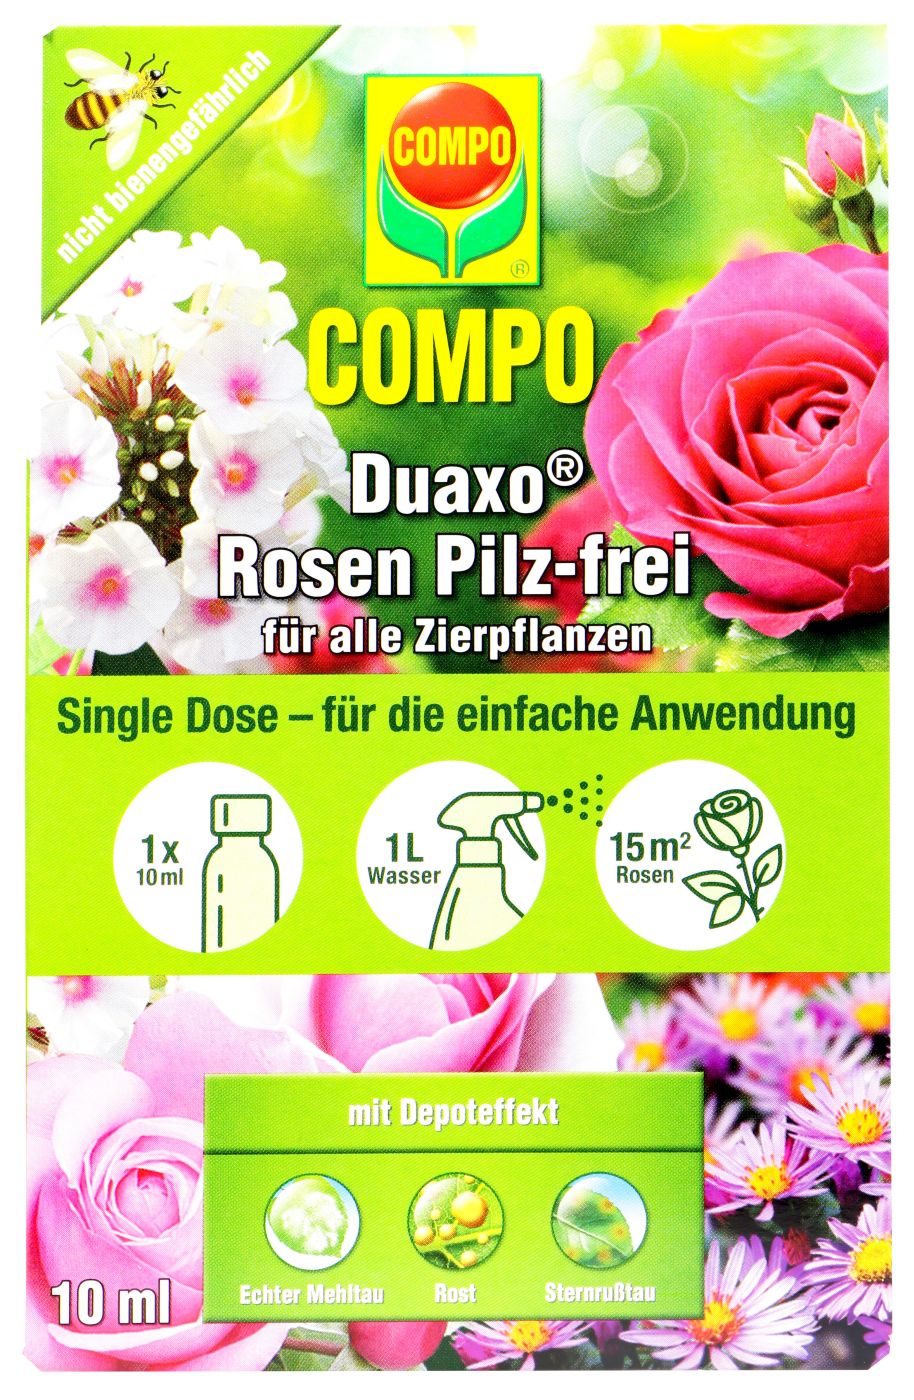 Compo Duaxo Rosen Pilz-frei für alle Zierpflanzen - 10 ml